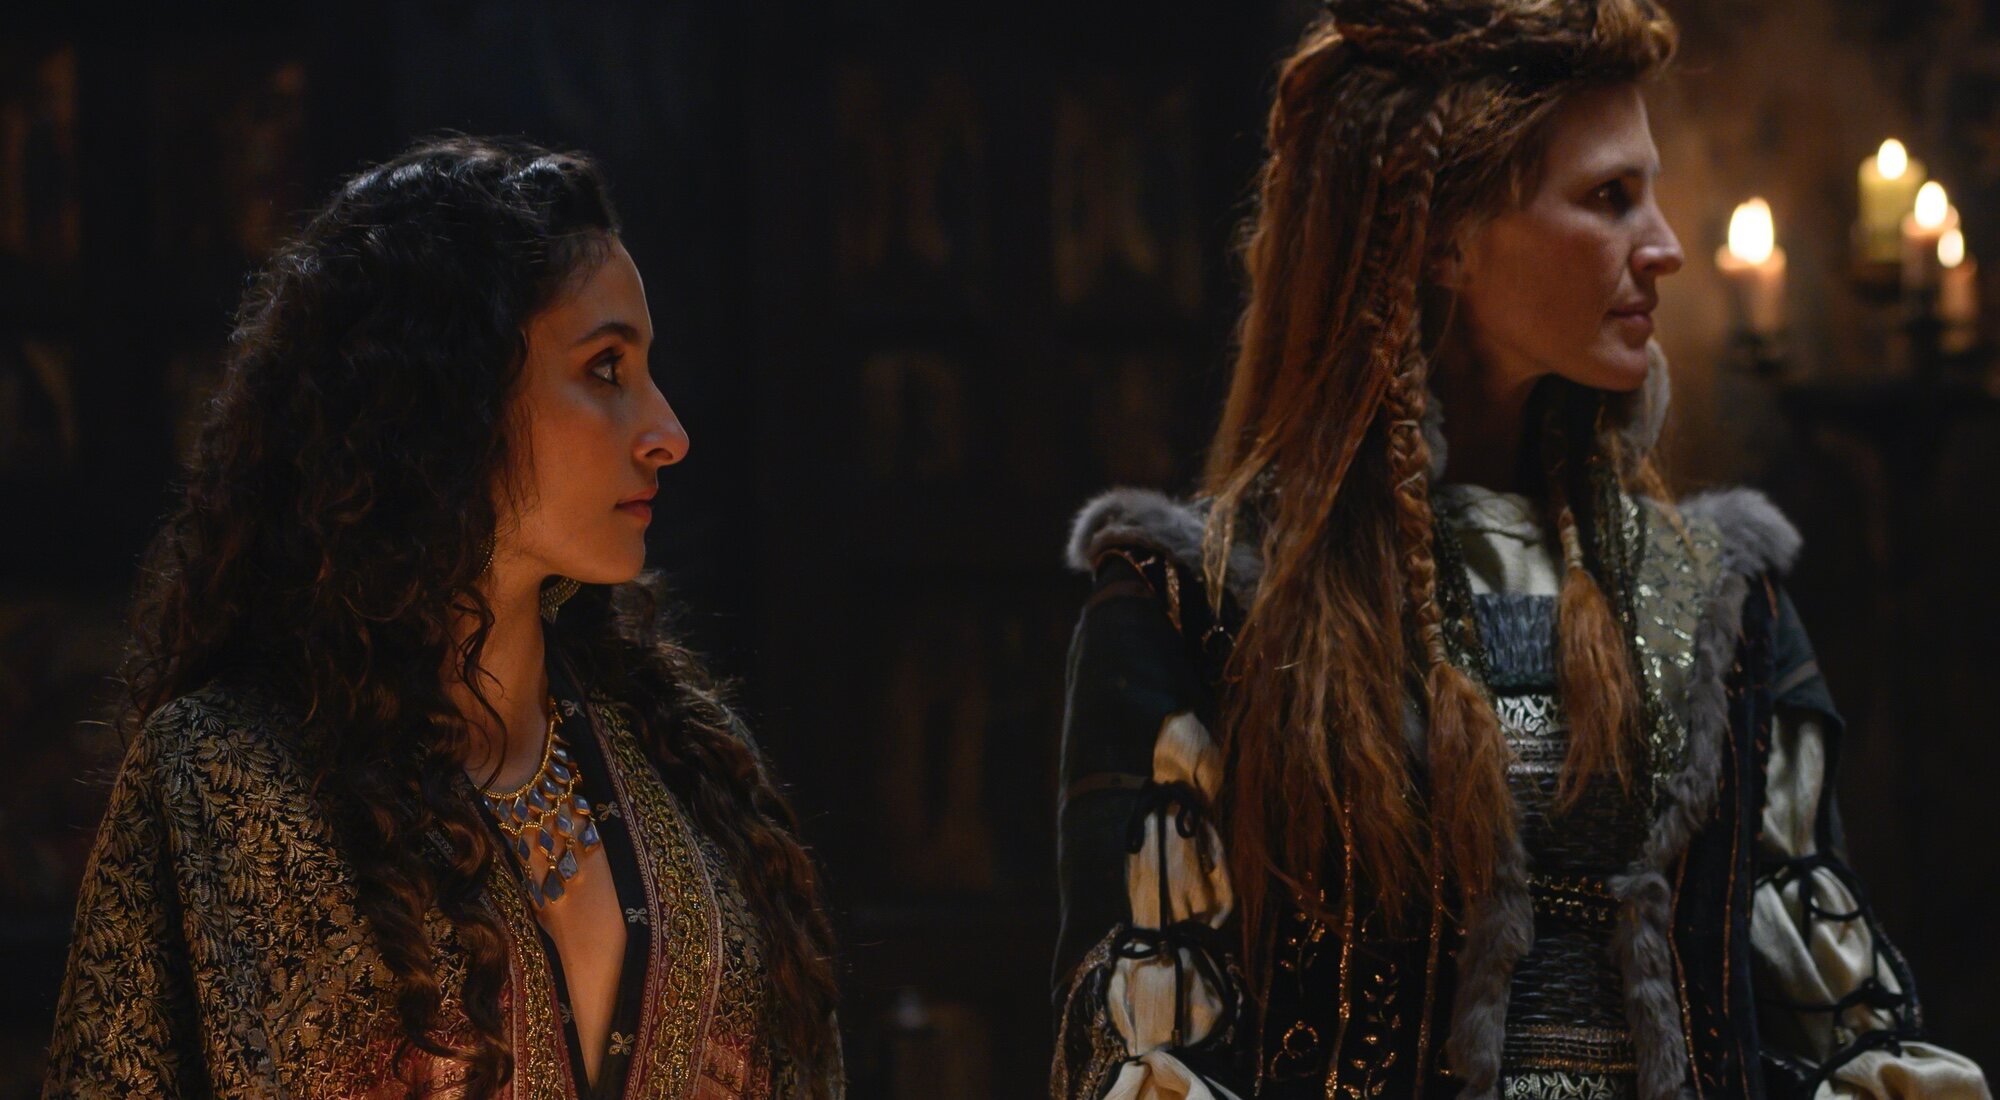 Sarah Perles y Amparo Alcaraz, fichajes de la segunda temporada de 'El Cid'